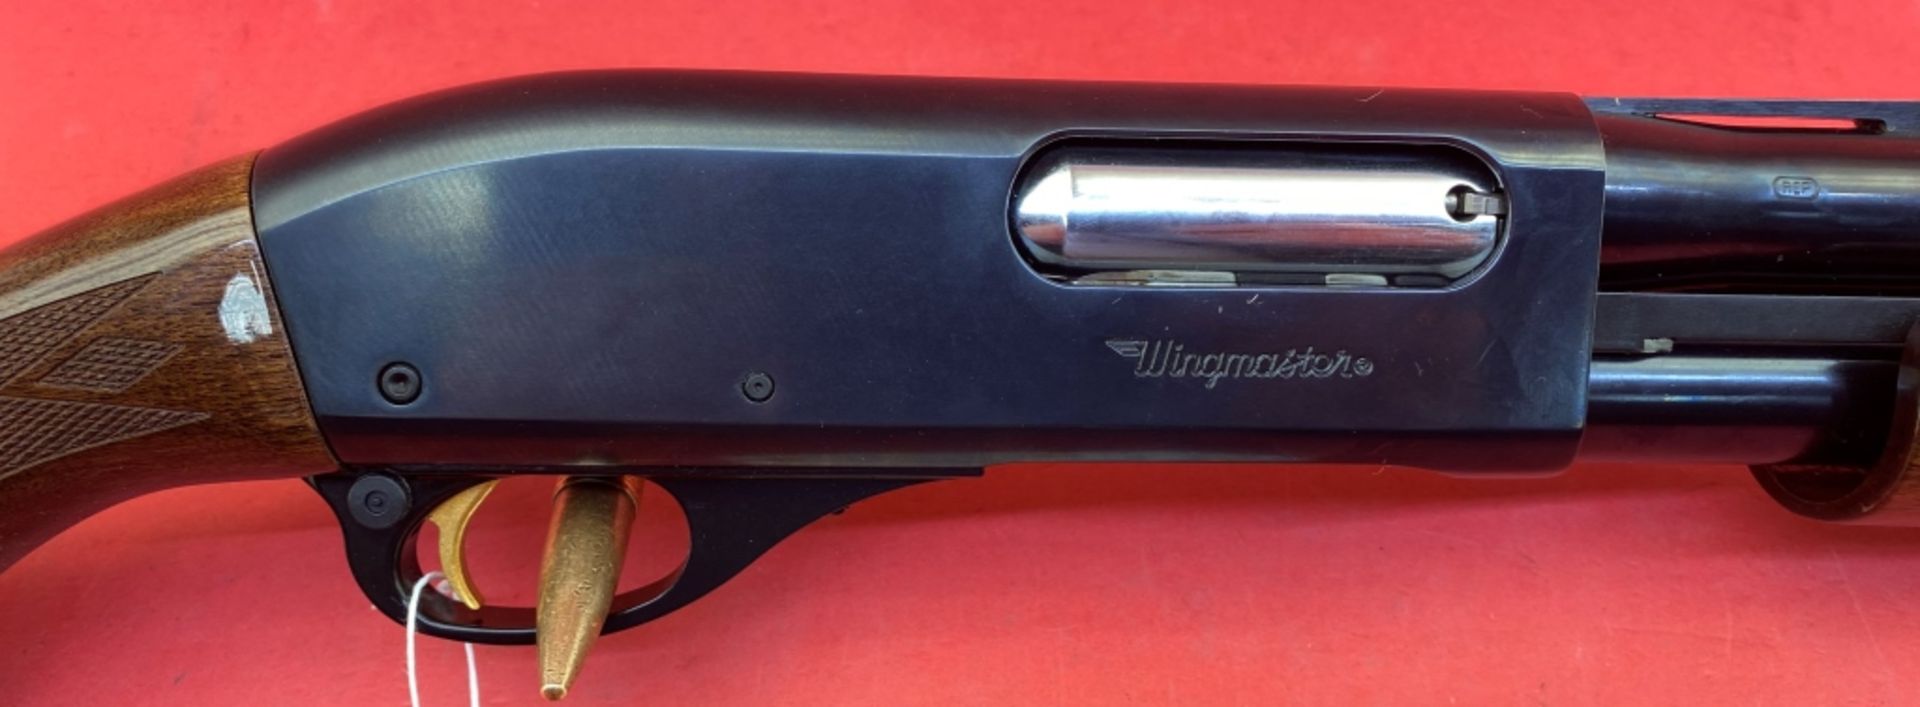 Remington 870 16 ga Shotgun - Image 4 of 13